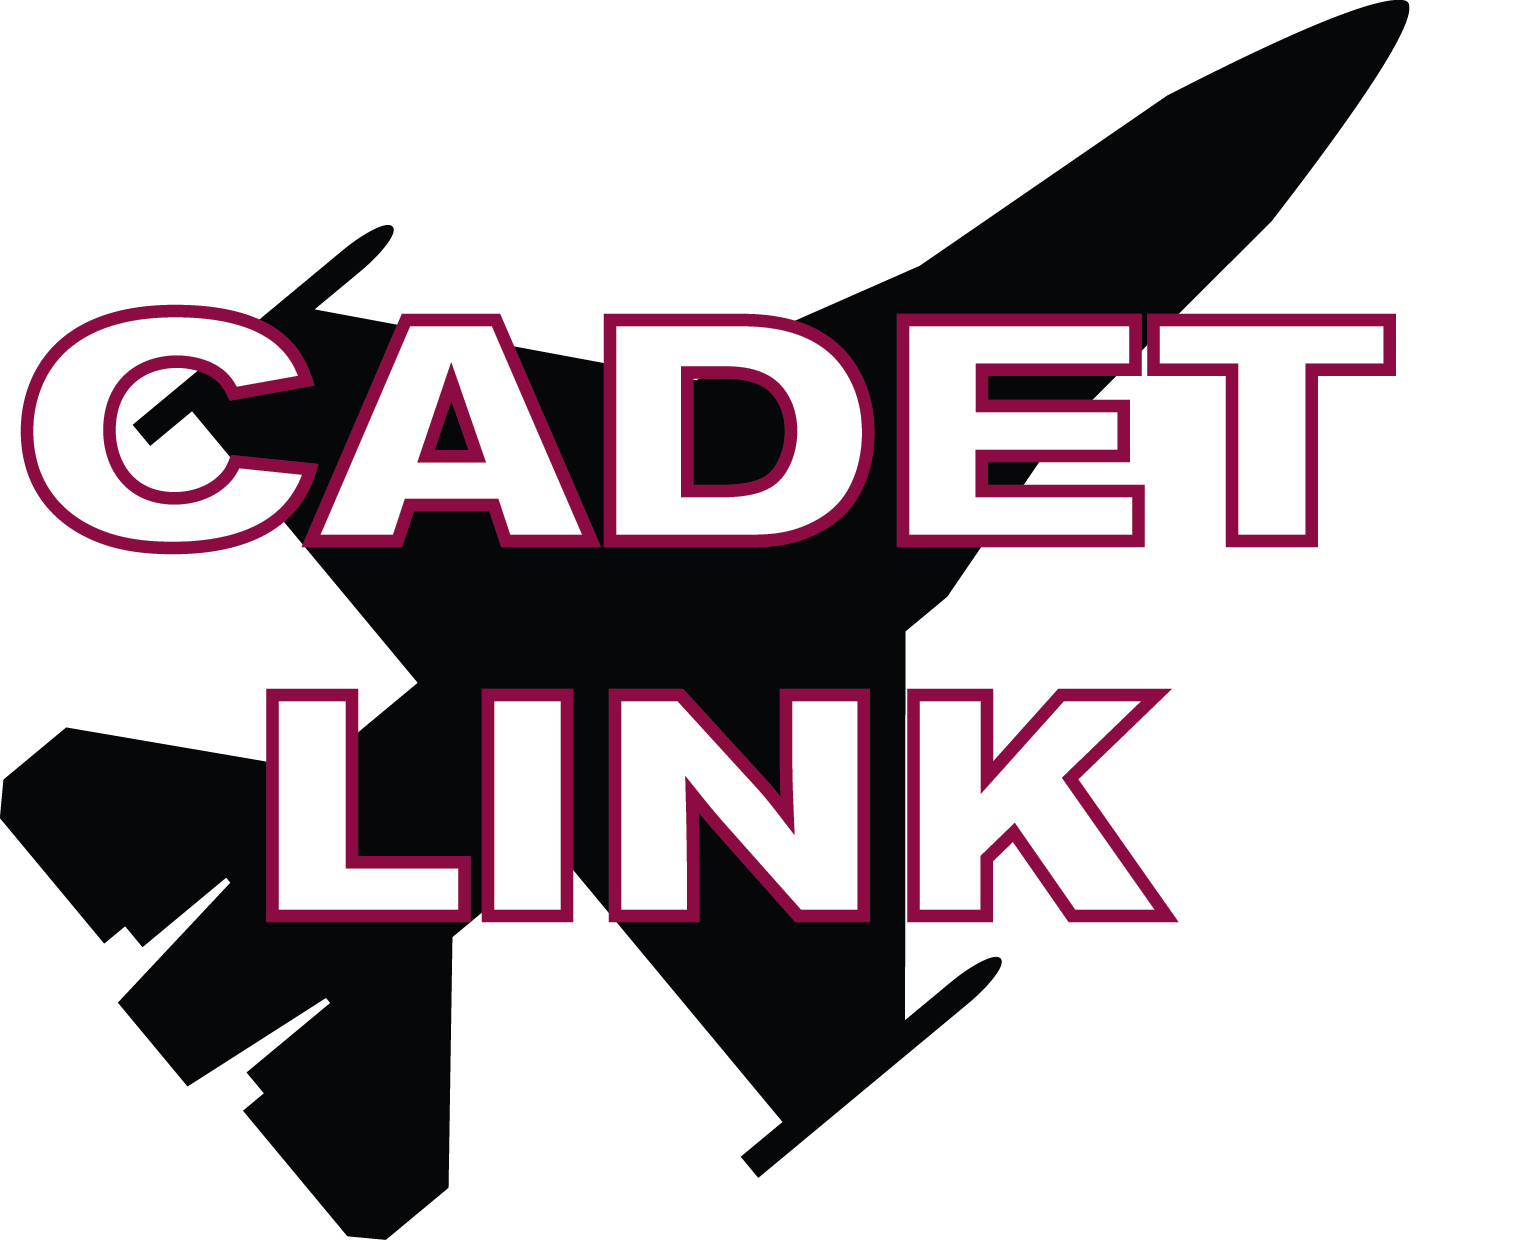 Cadet Link